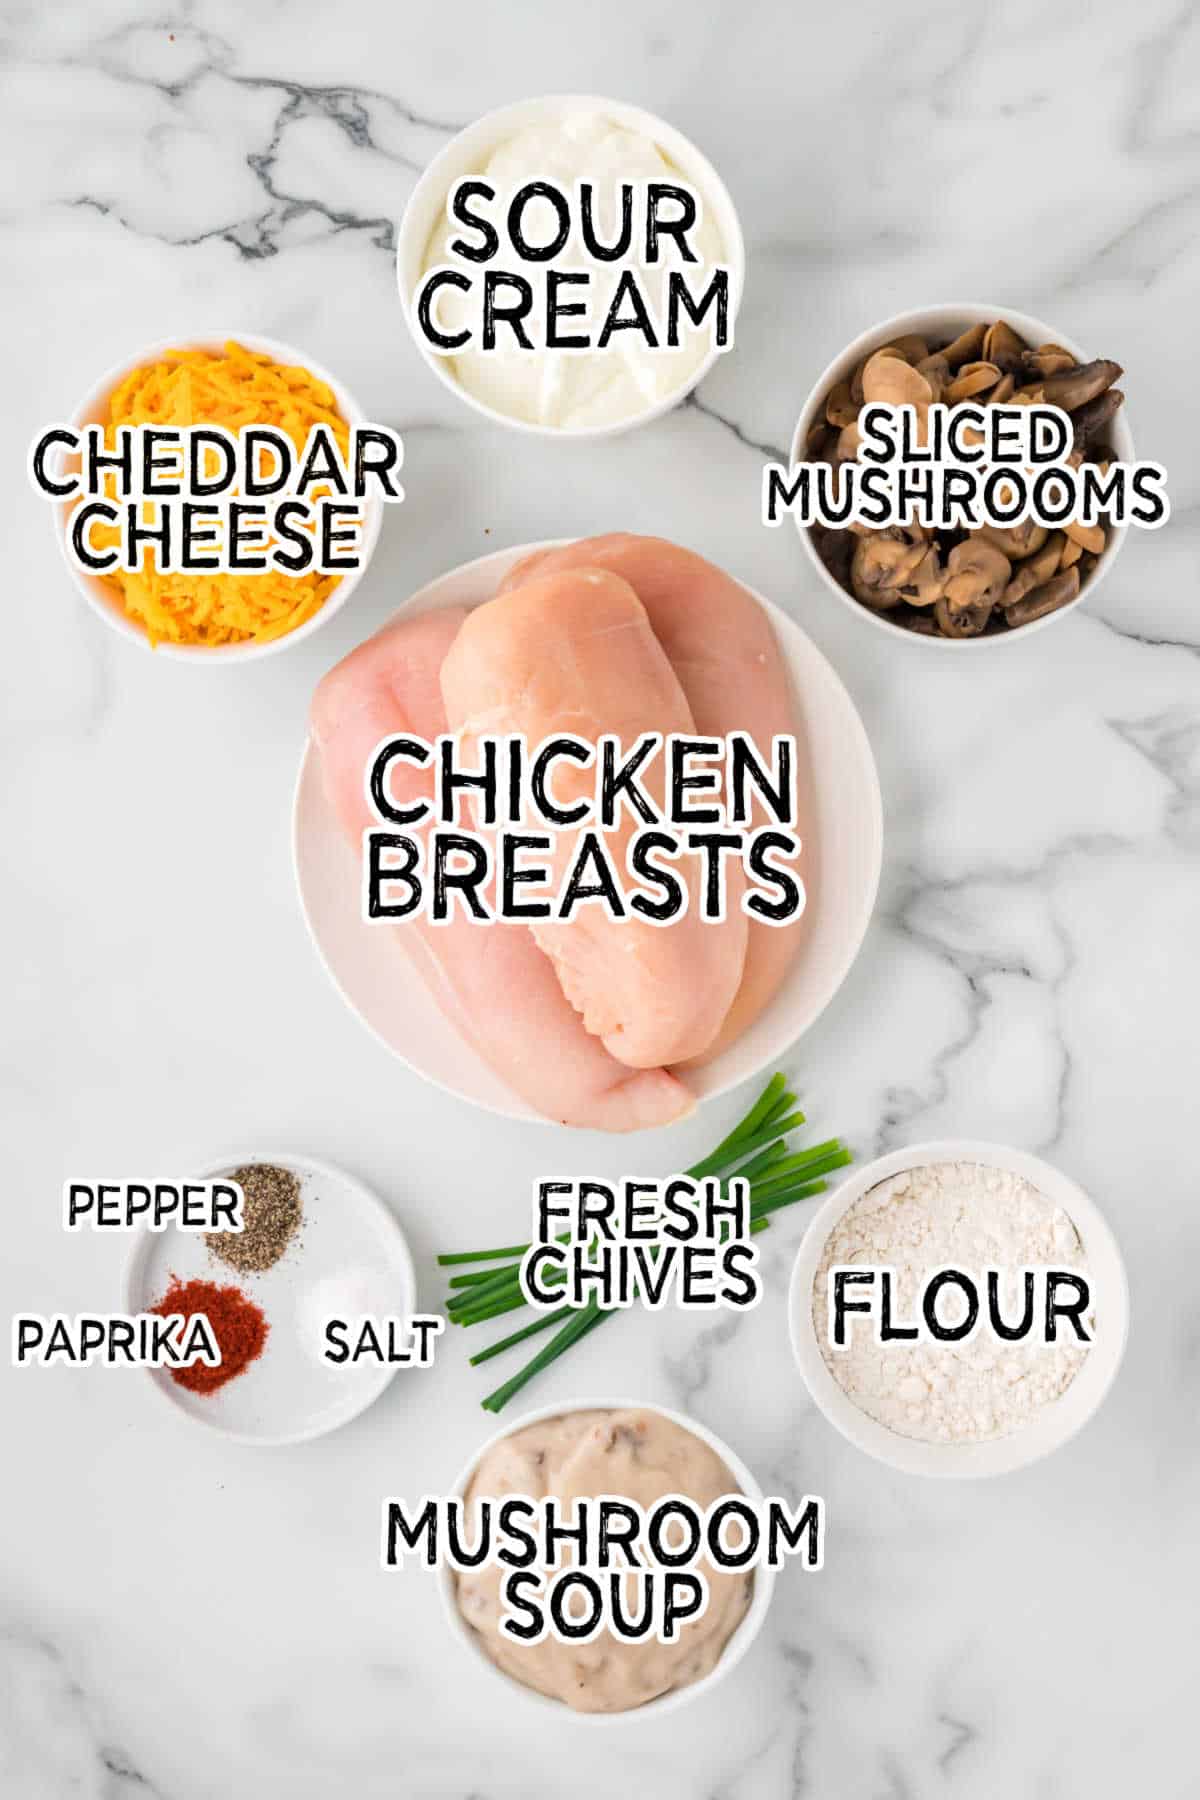 Ingredients to make sour cream chicken bake.